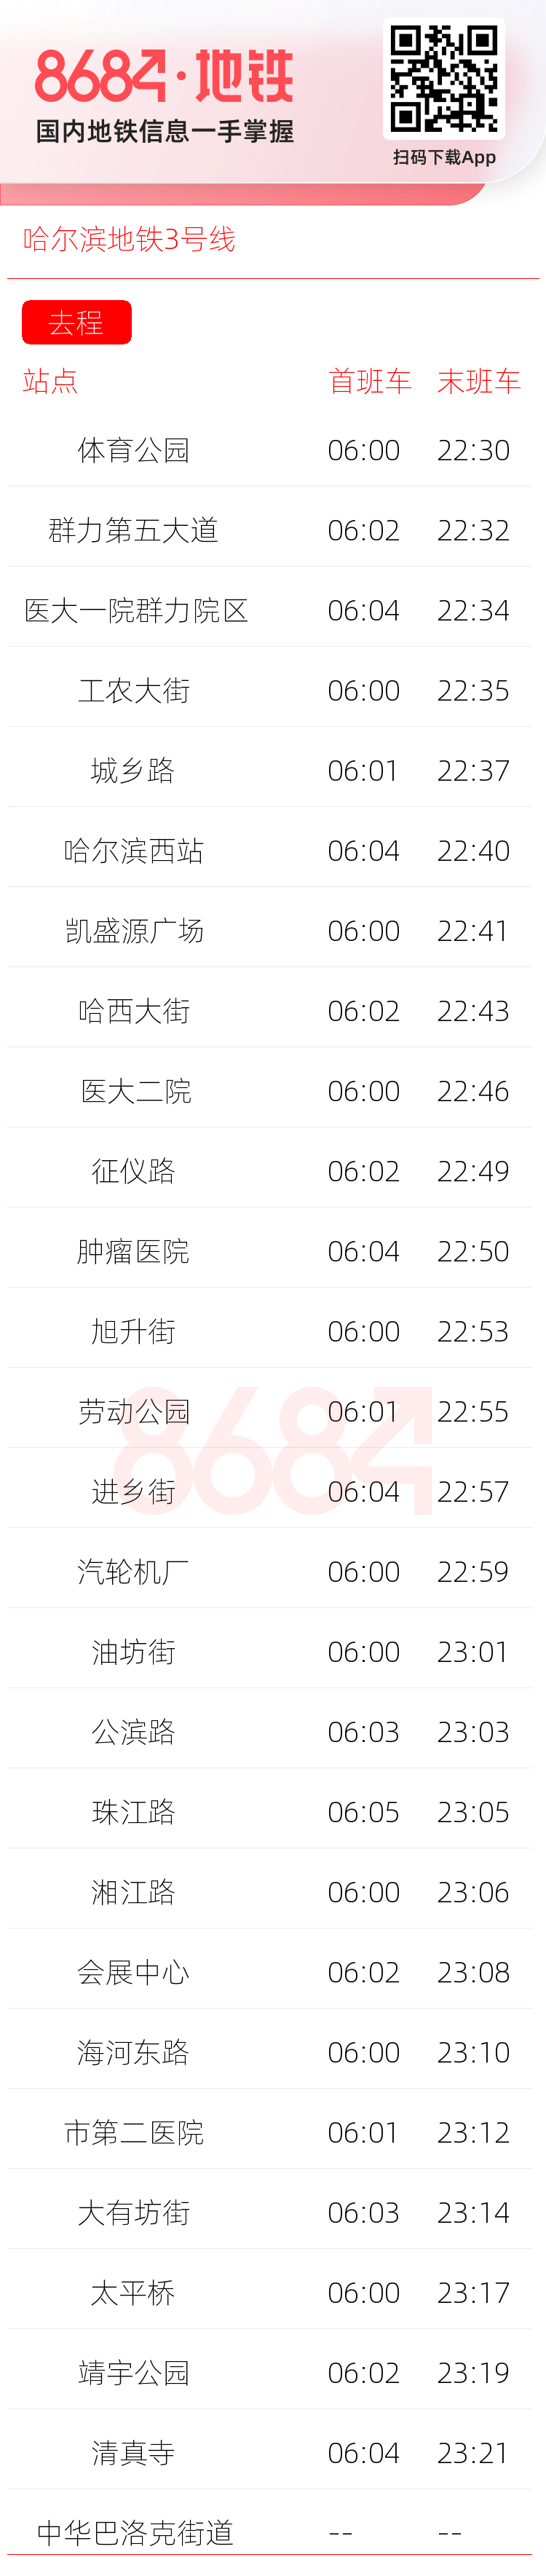 哈尔滨地铁3号线运营时间表